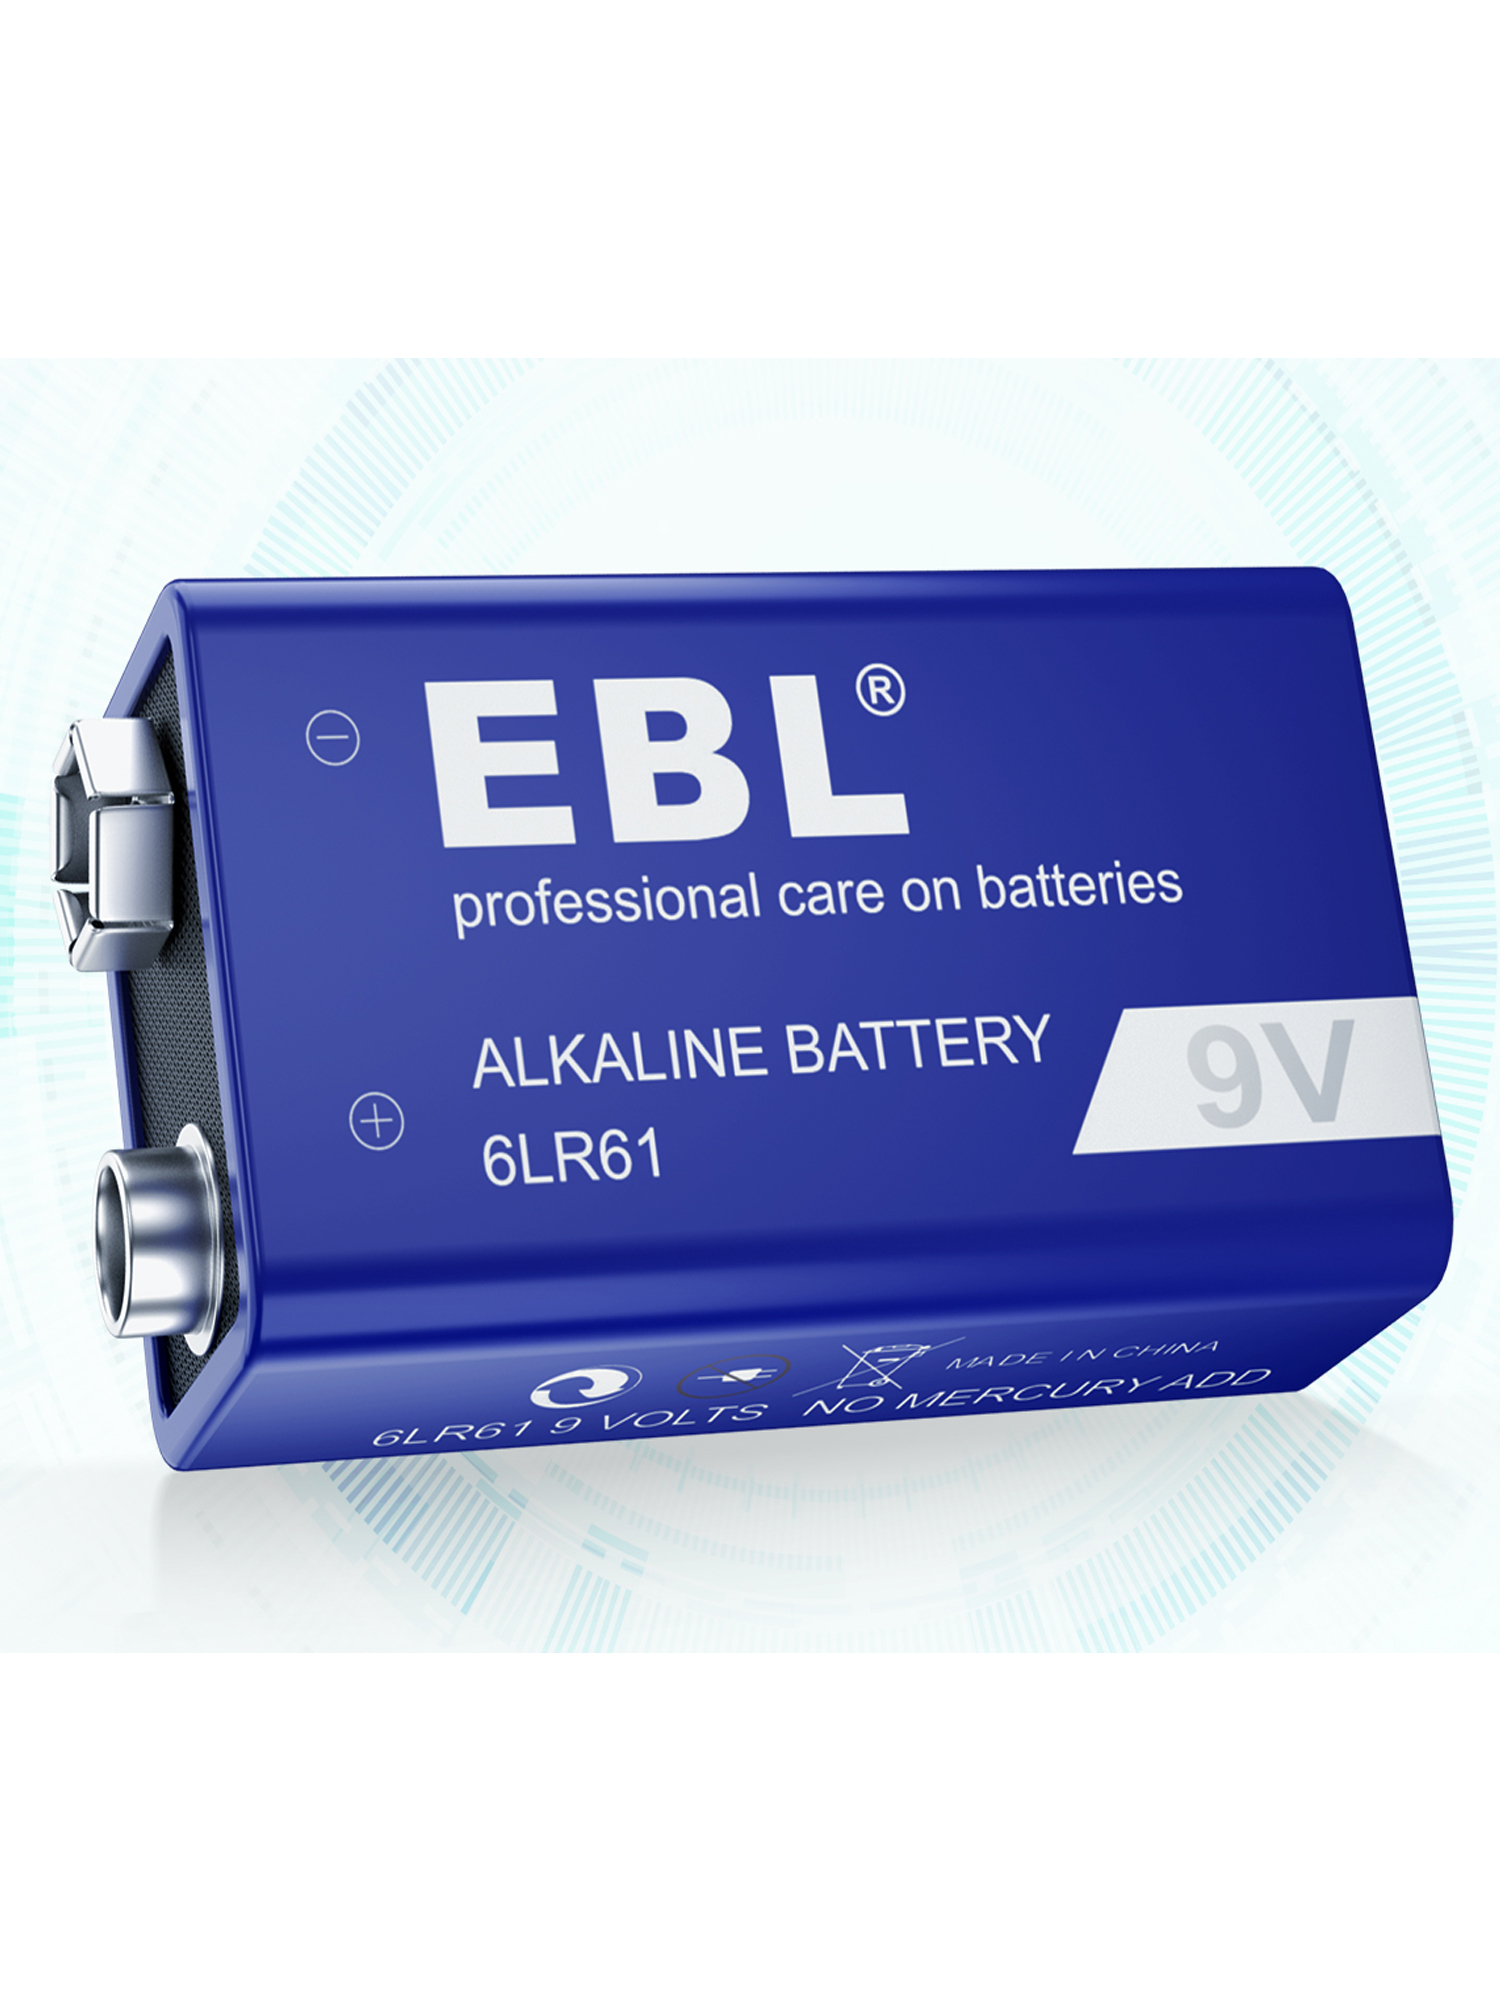 EBL Alkaline Batteries 9V, 9 Volt 6LR61 Batteries - image 1 of 8